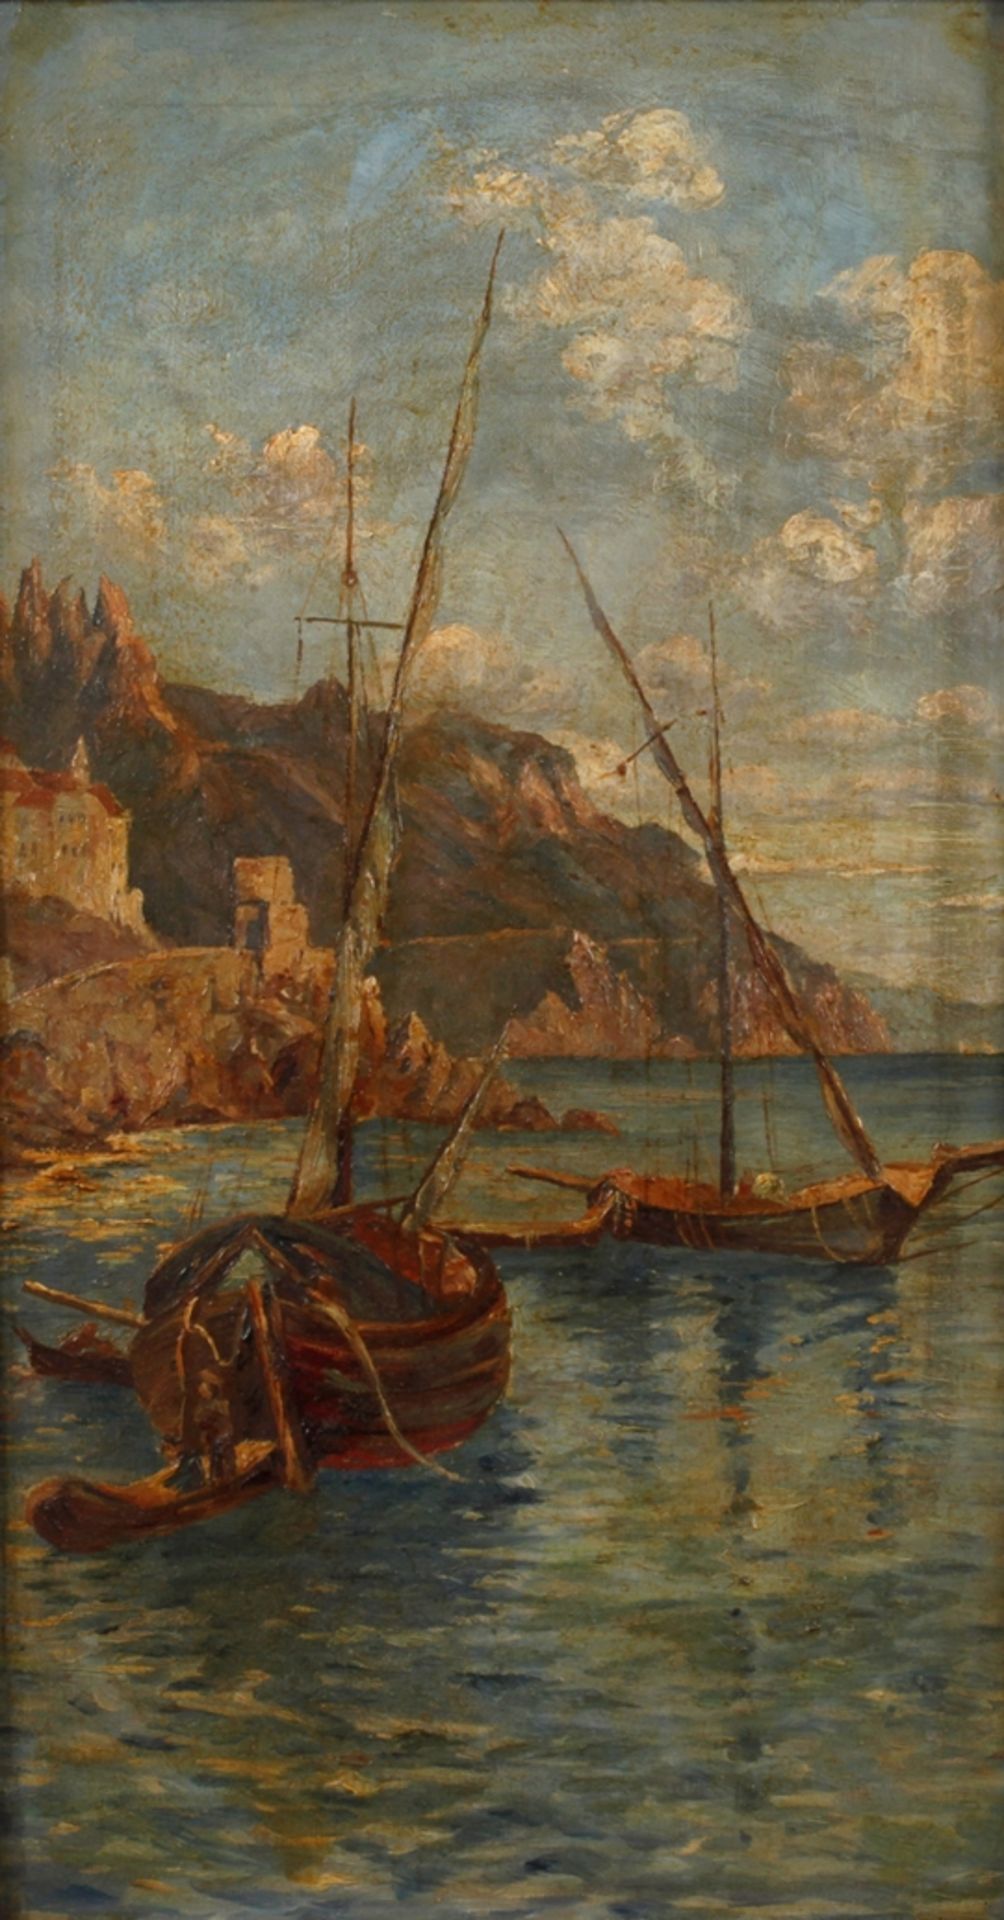 S. von Horstig d' Aubigny, Amalfiküsteankernde Boote vor felsiger Küste, pastose Malerei, Öl auf